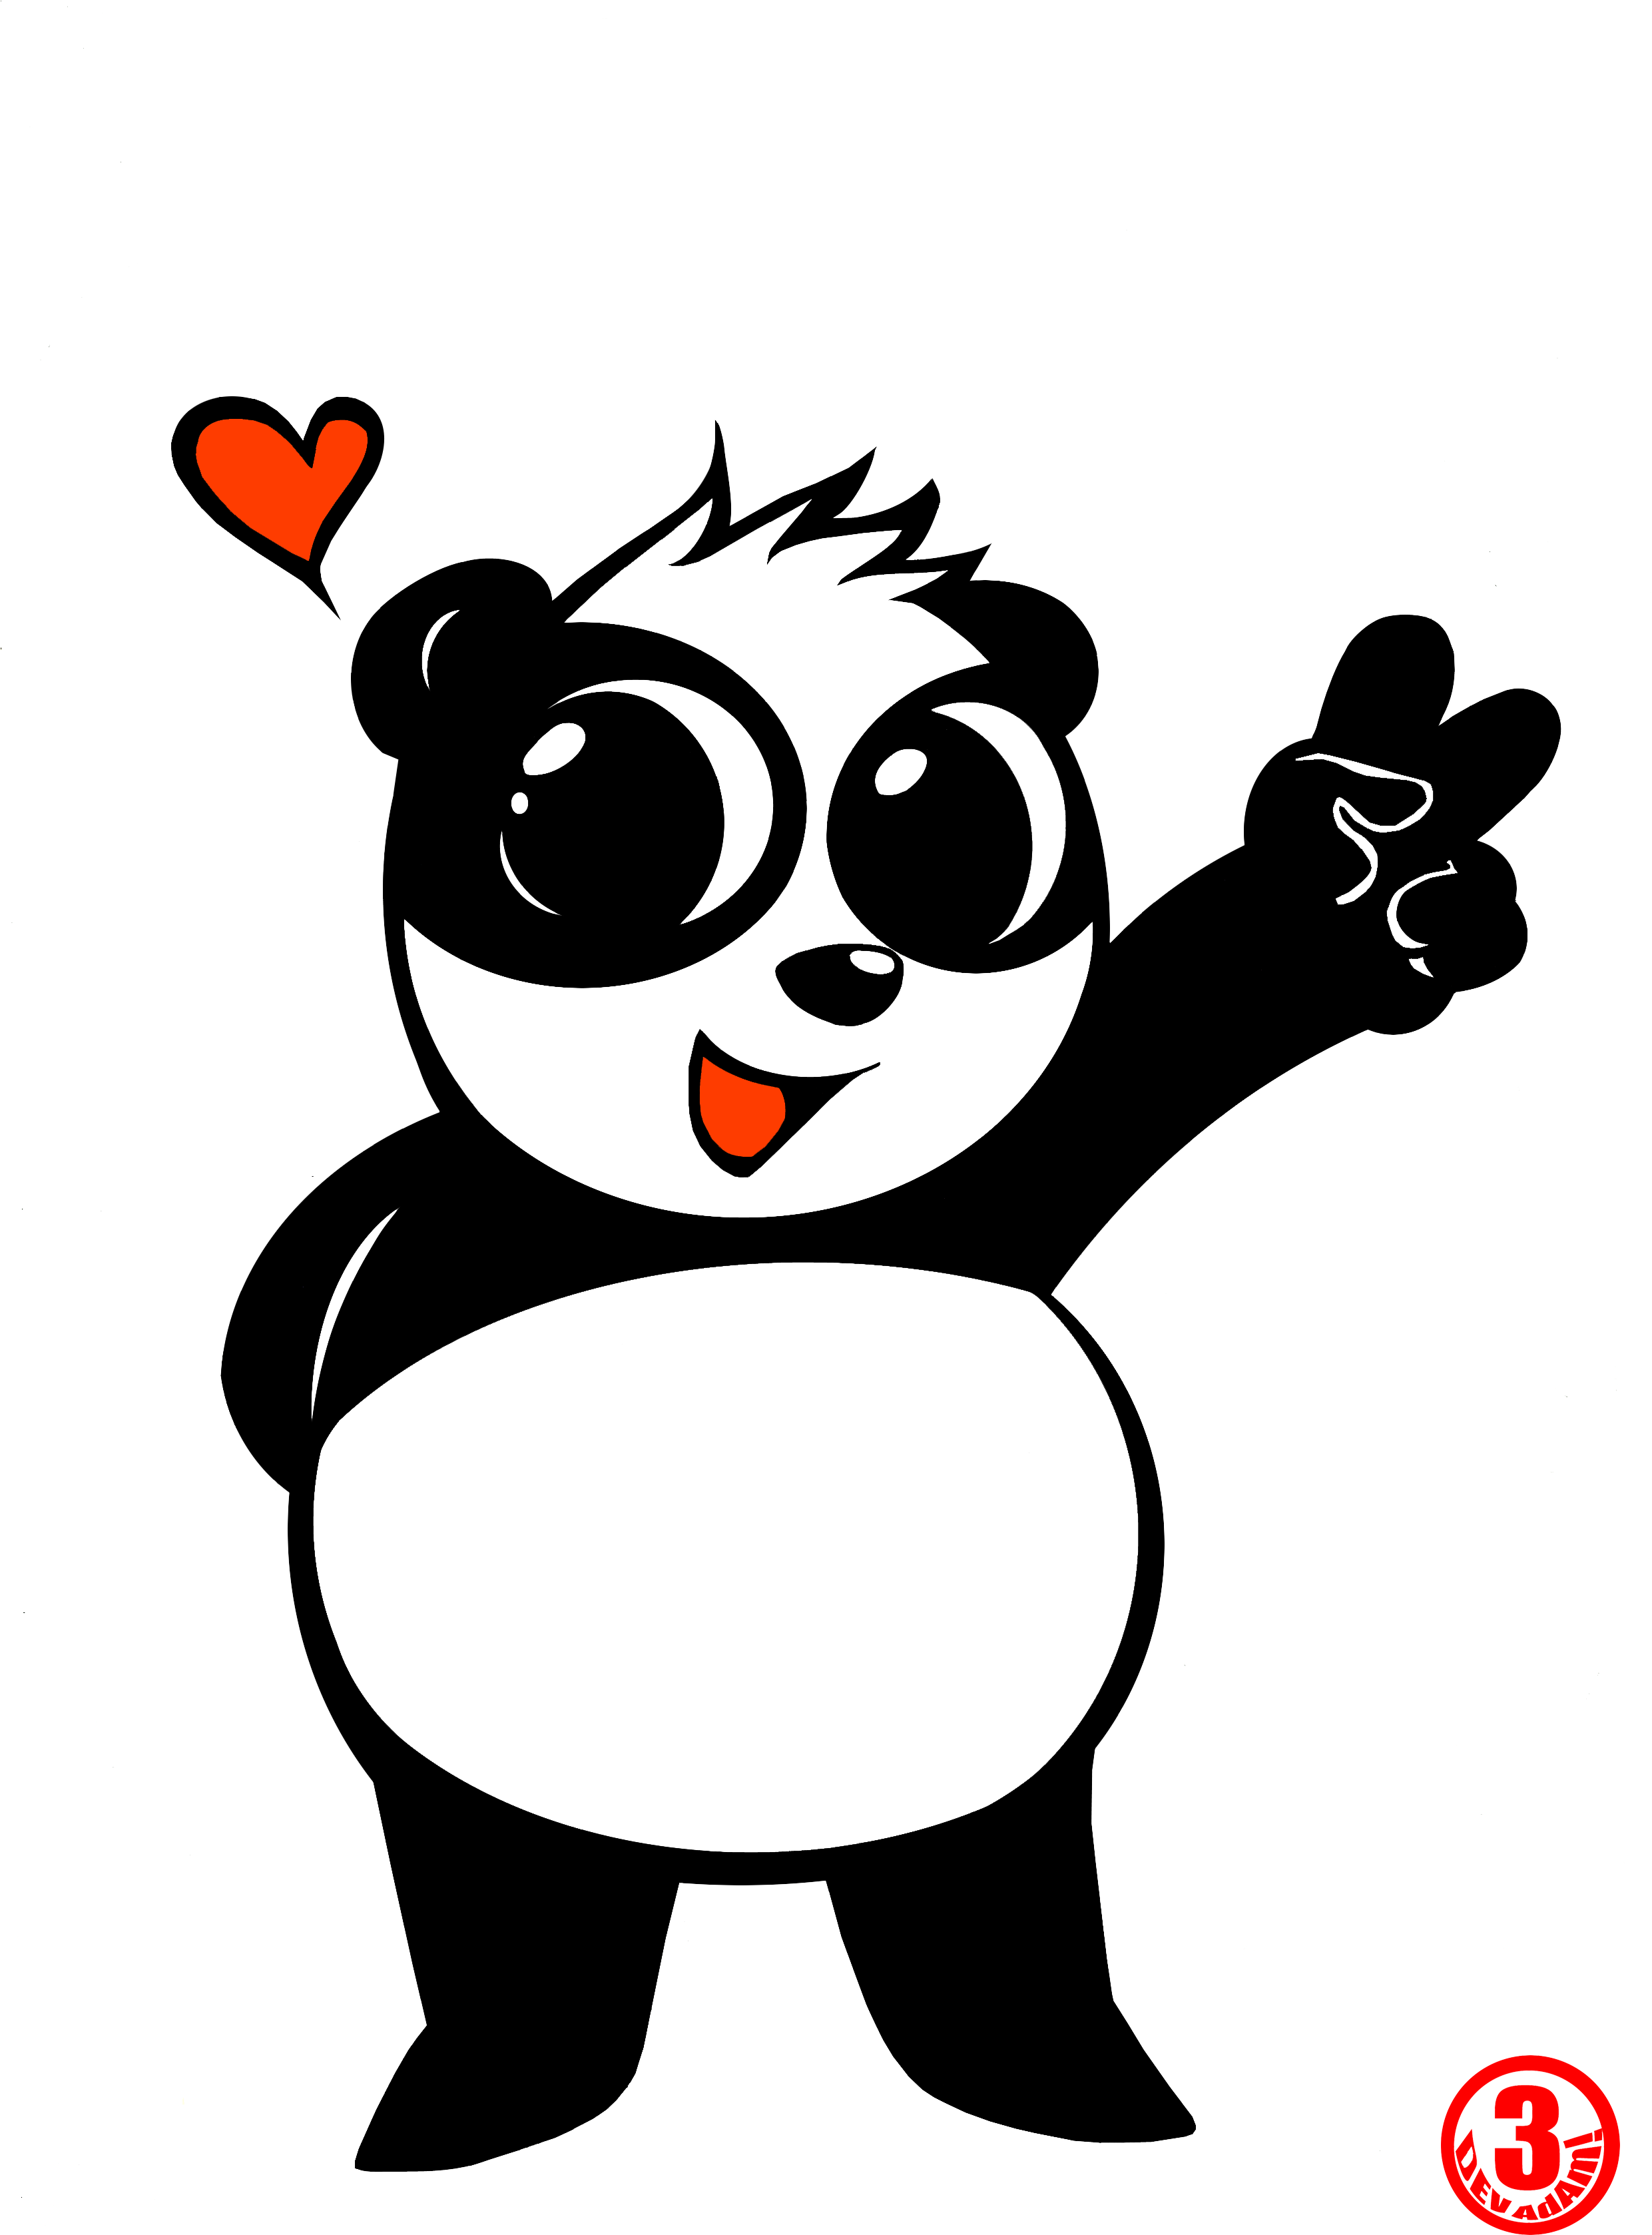 Giant Panda Red Panda Bear Drawing Cuteness - Giant Panda Red Panda Bear Drawing Cuteness (2480x3408)